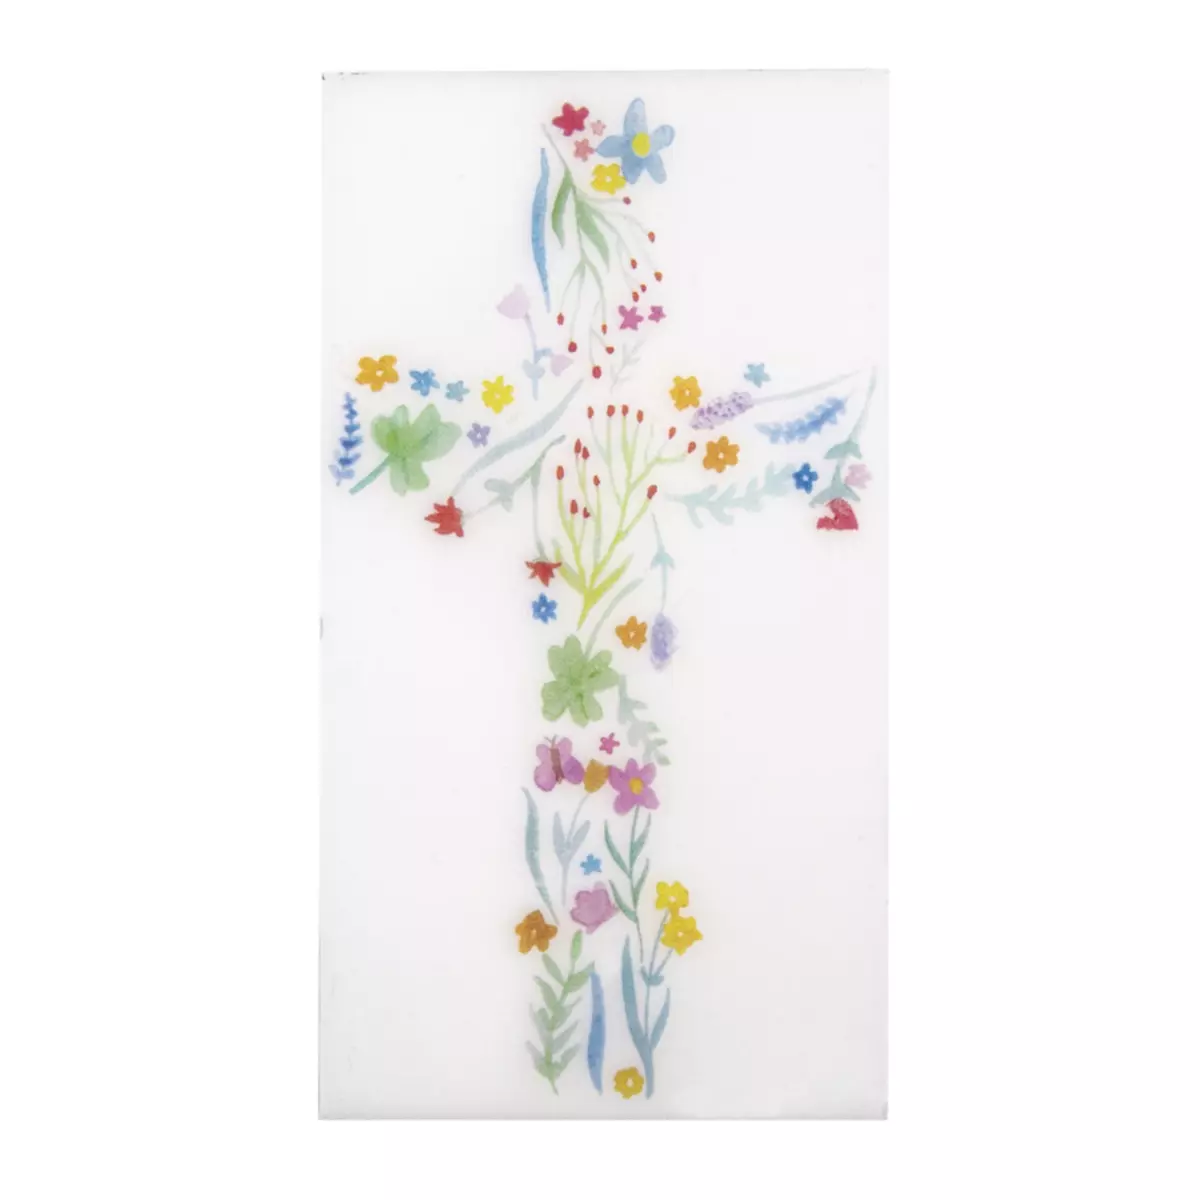 Rayher Motifs de cire Croix florale, Colore, 6,5x12cm, 1 pce